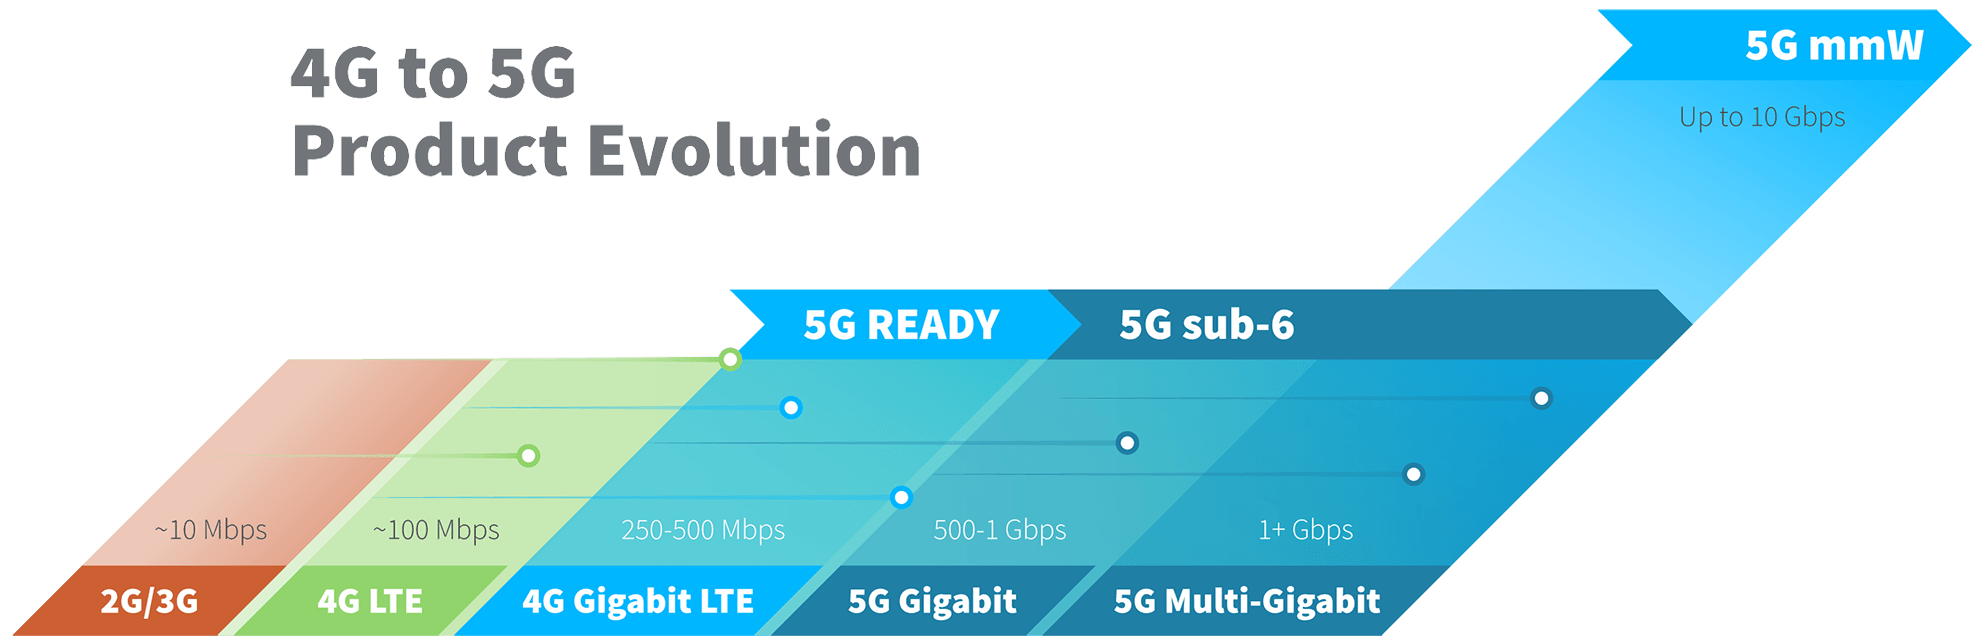 Évolution des produits de la 4G à la 5G